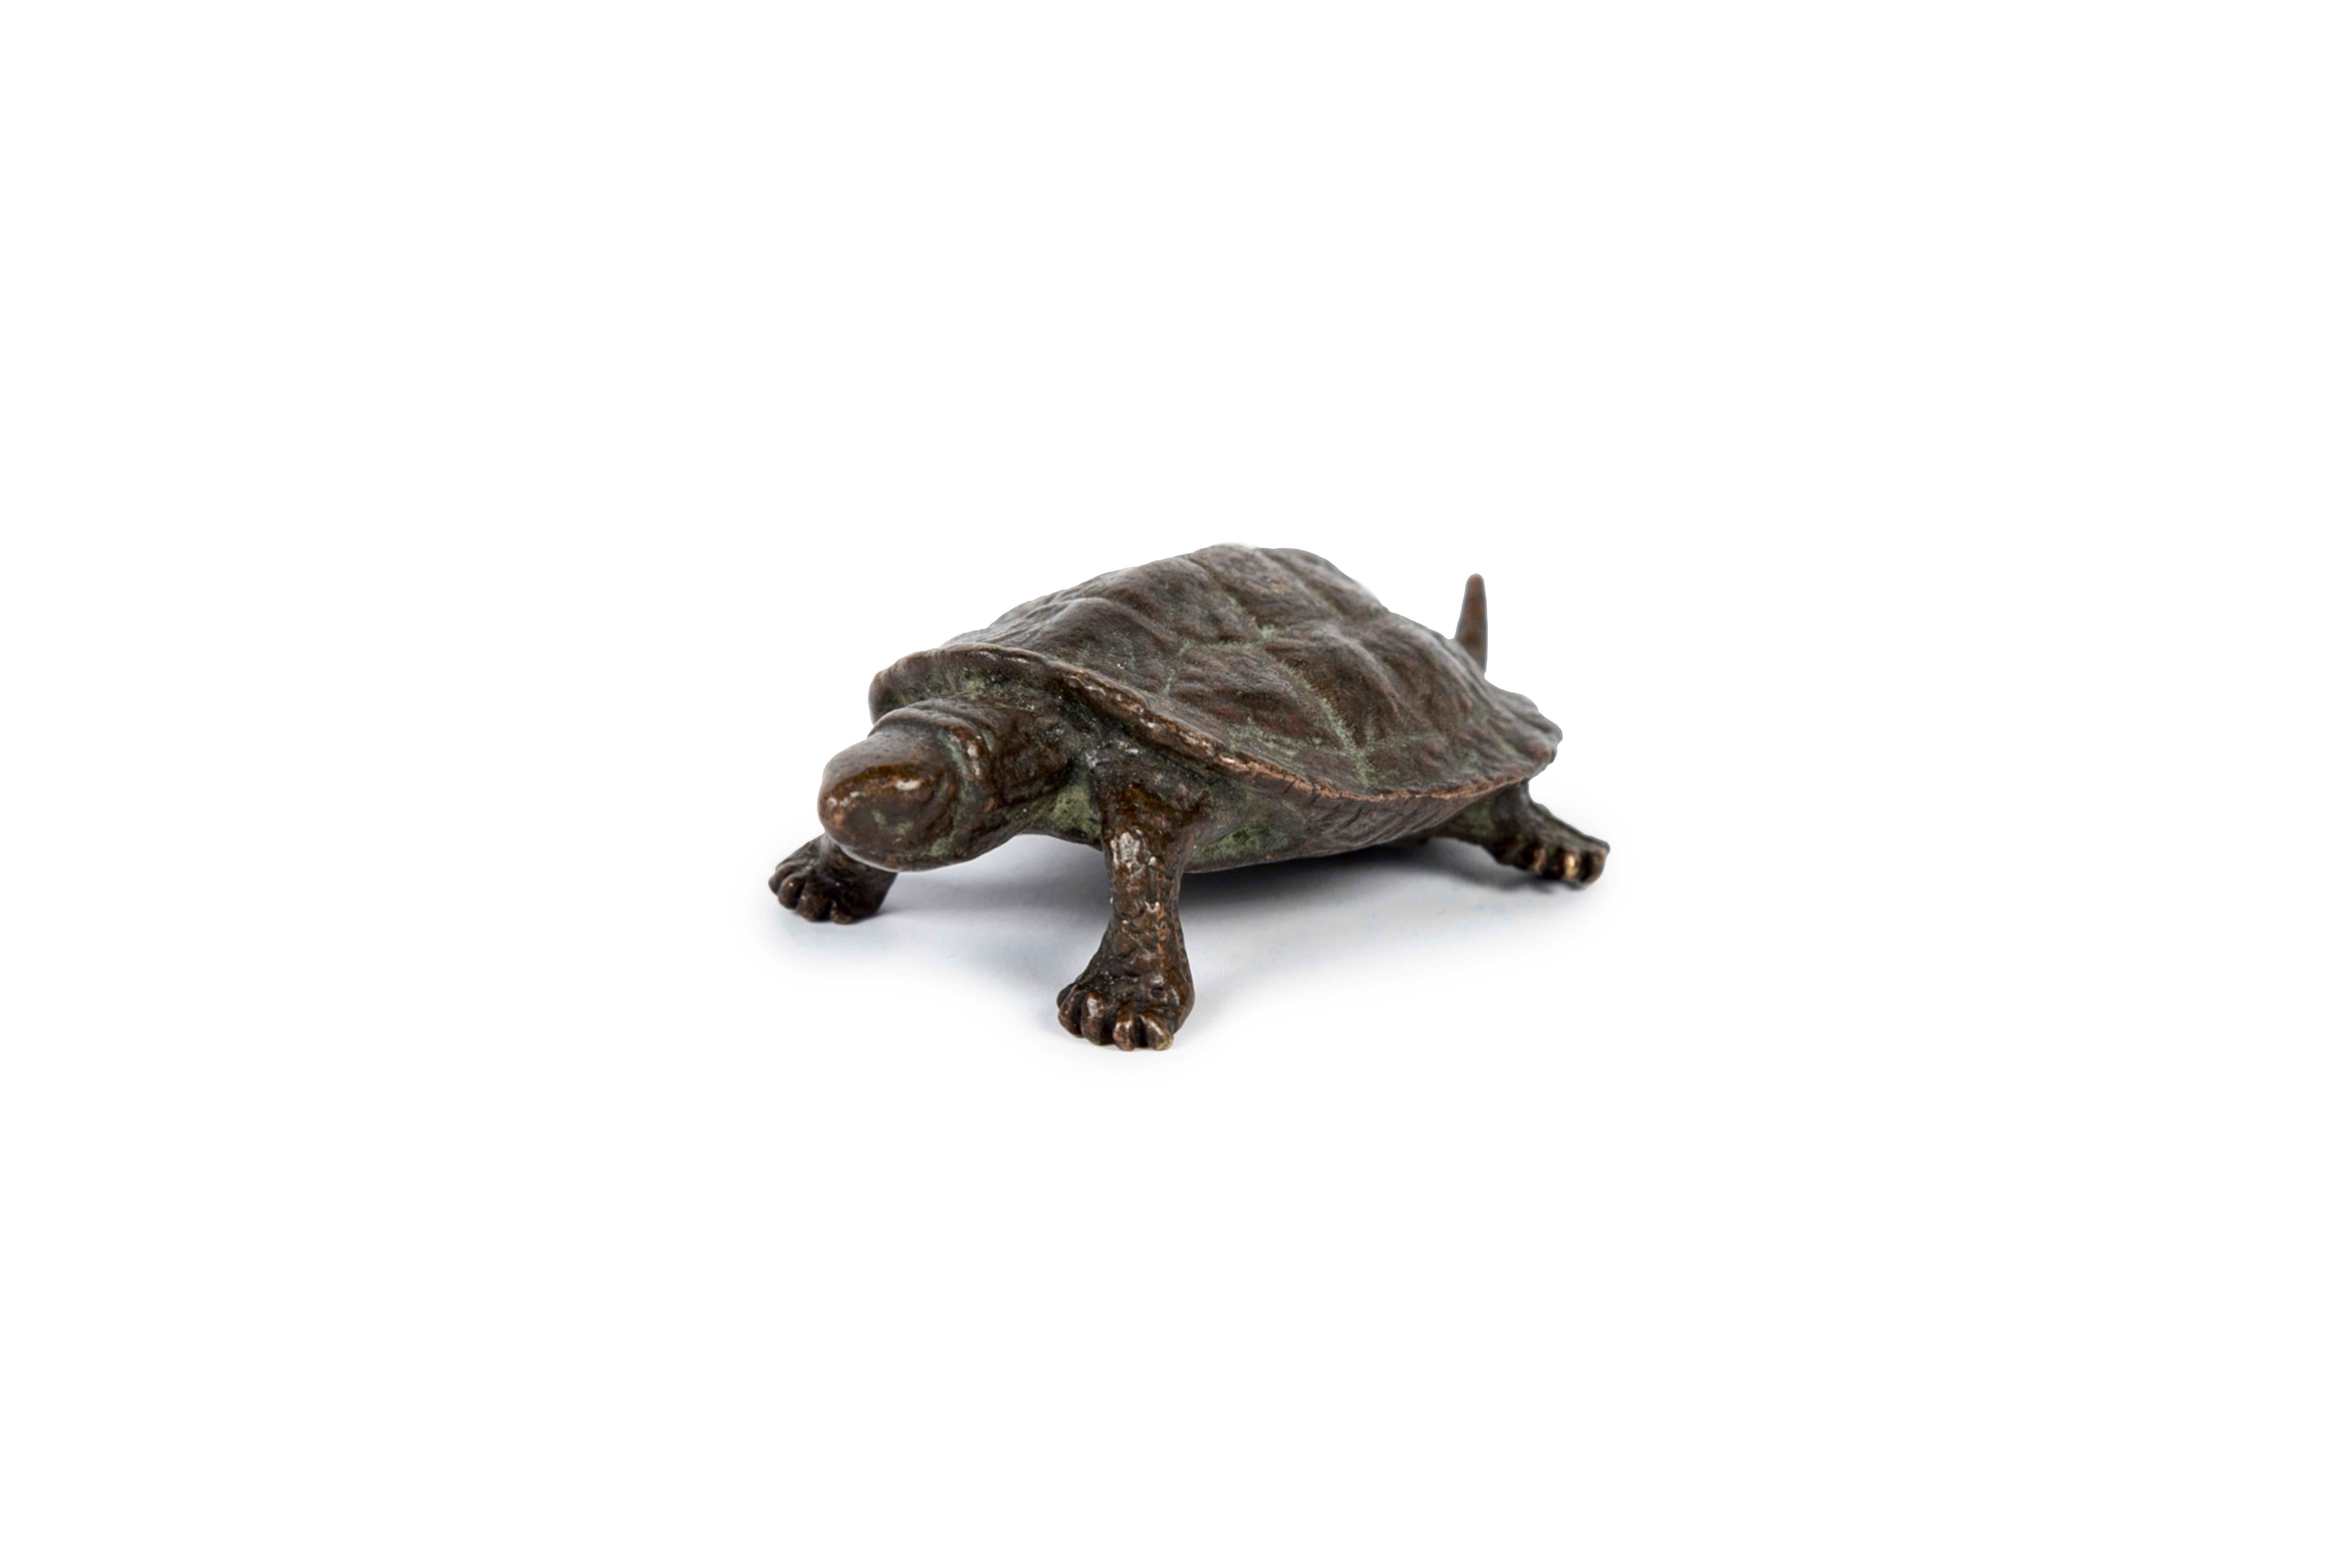 Sculpture okimono d'une tortue en bronze, queue rétractable.
Au Japon, la tortue (kame) est un symbole de longévité et un animal de bon augure.
Elle est censée apporter dix mille ans de bonheur.
Signé Hata (はた) sur la face inférieure